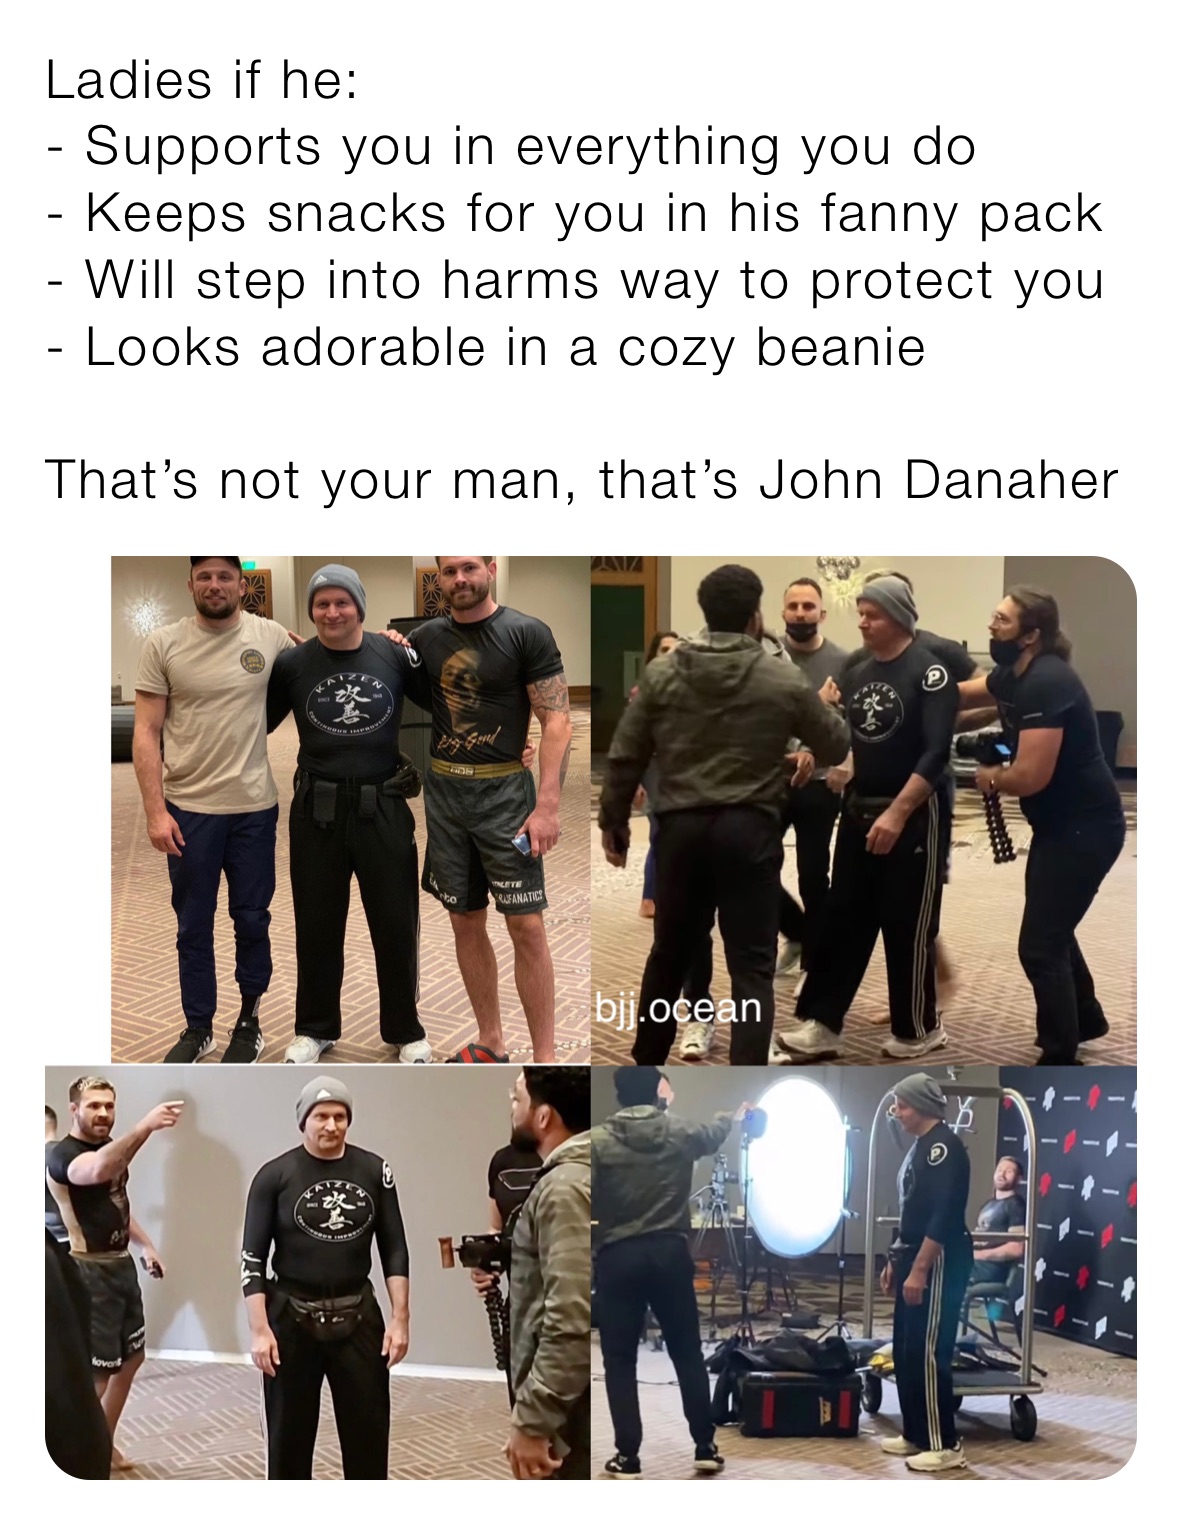 fanny pack meme